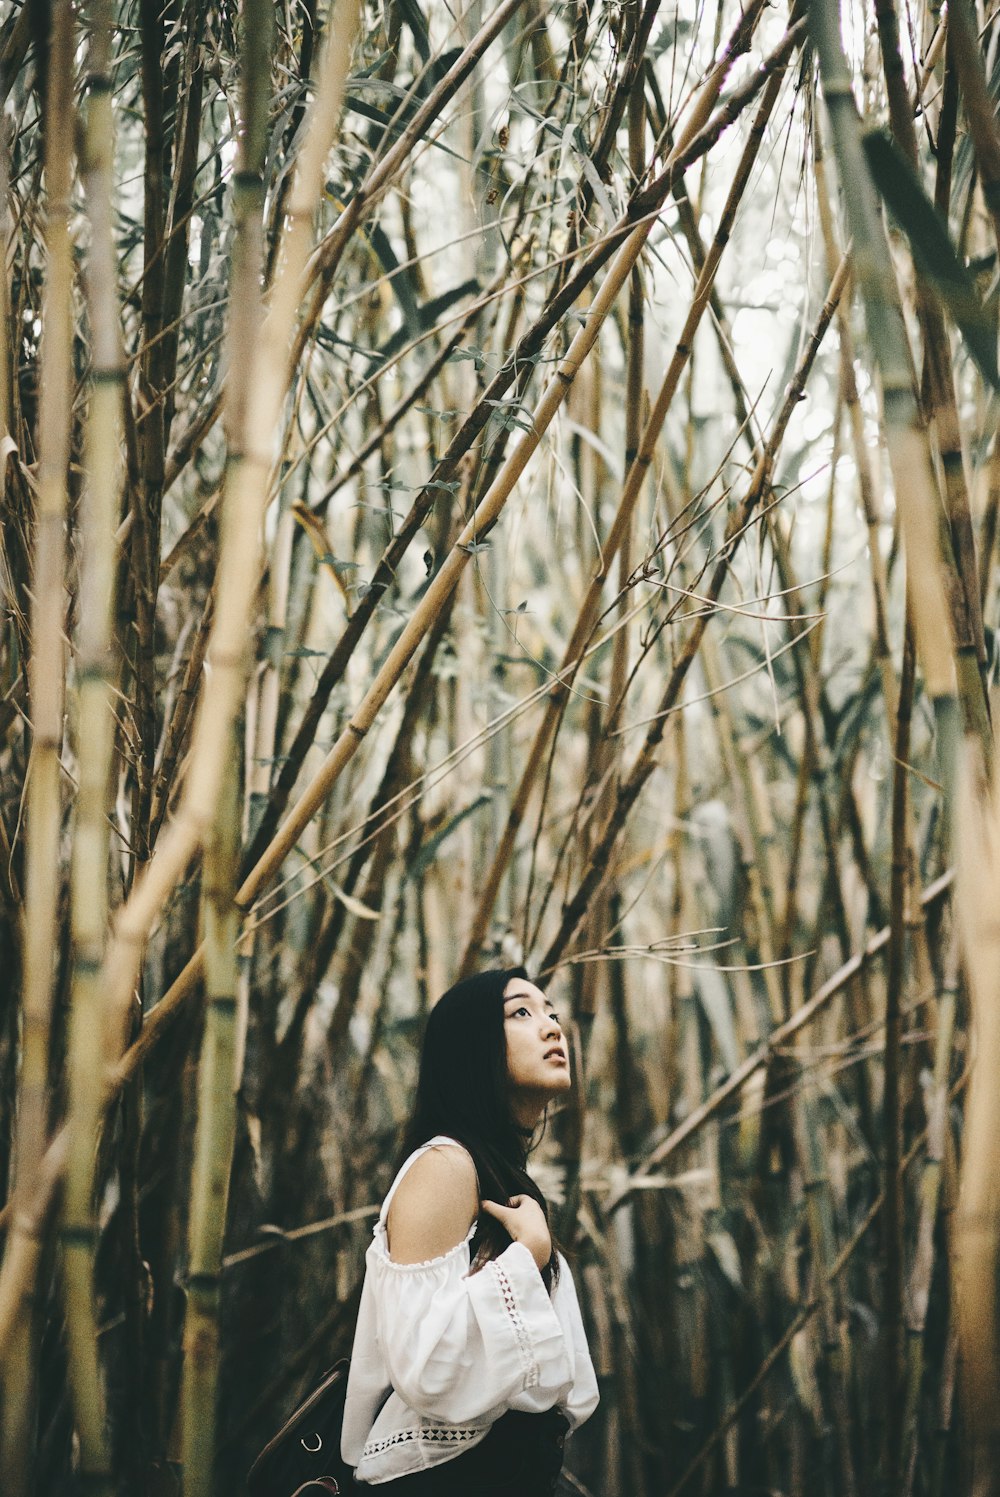 donna in bianco cold-shoulder top in piedi all'interno della foresta di bambù